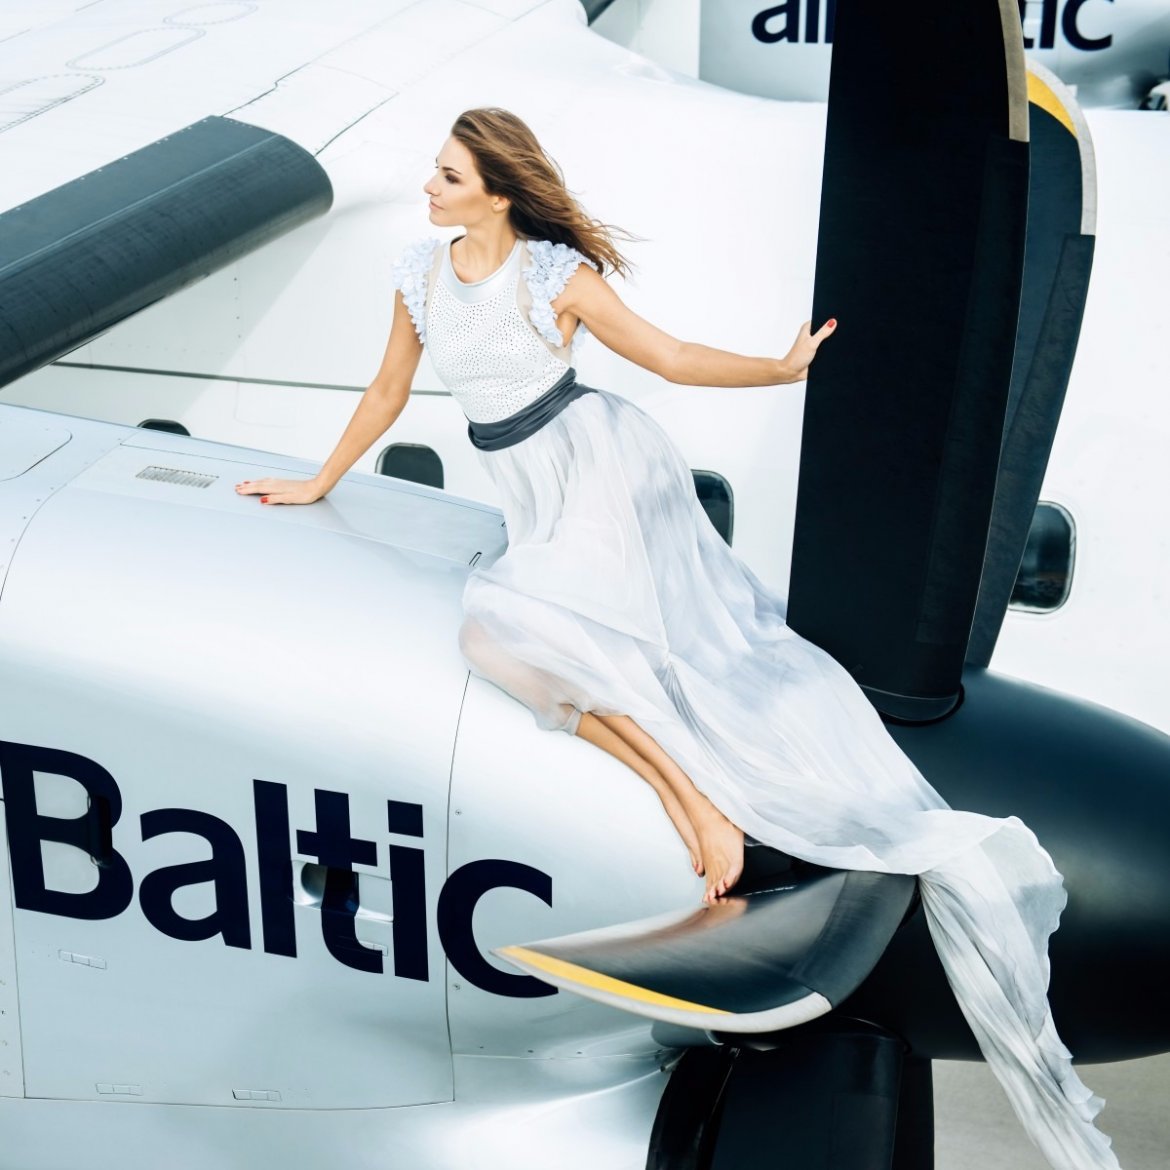 Авиакомпания airBaltic представила сексуальный календарь на 2016 год